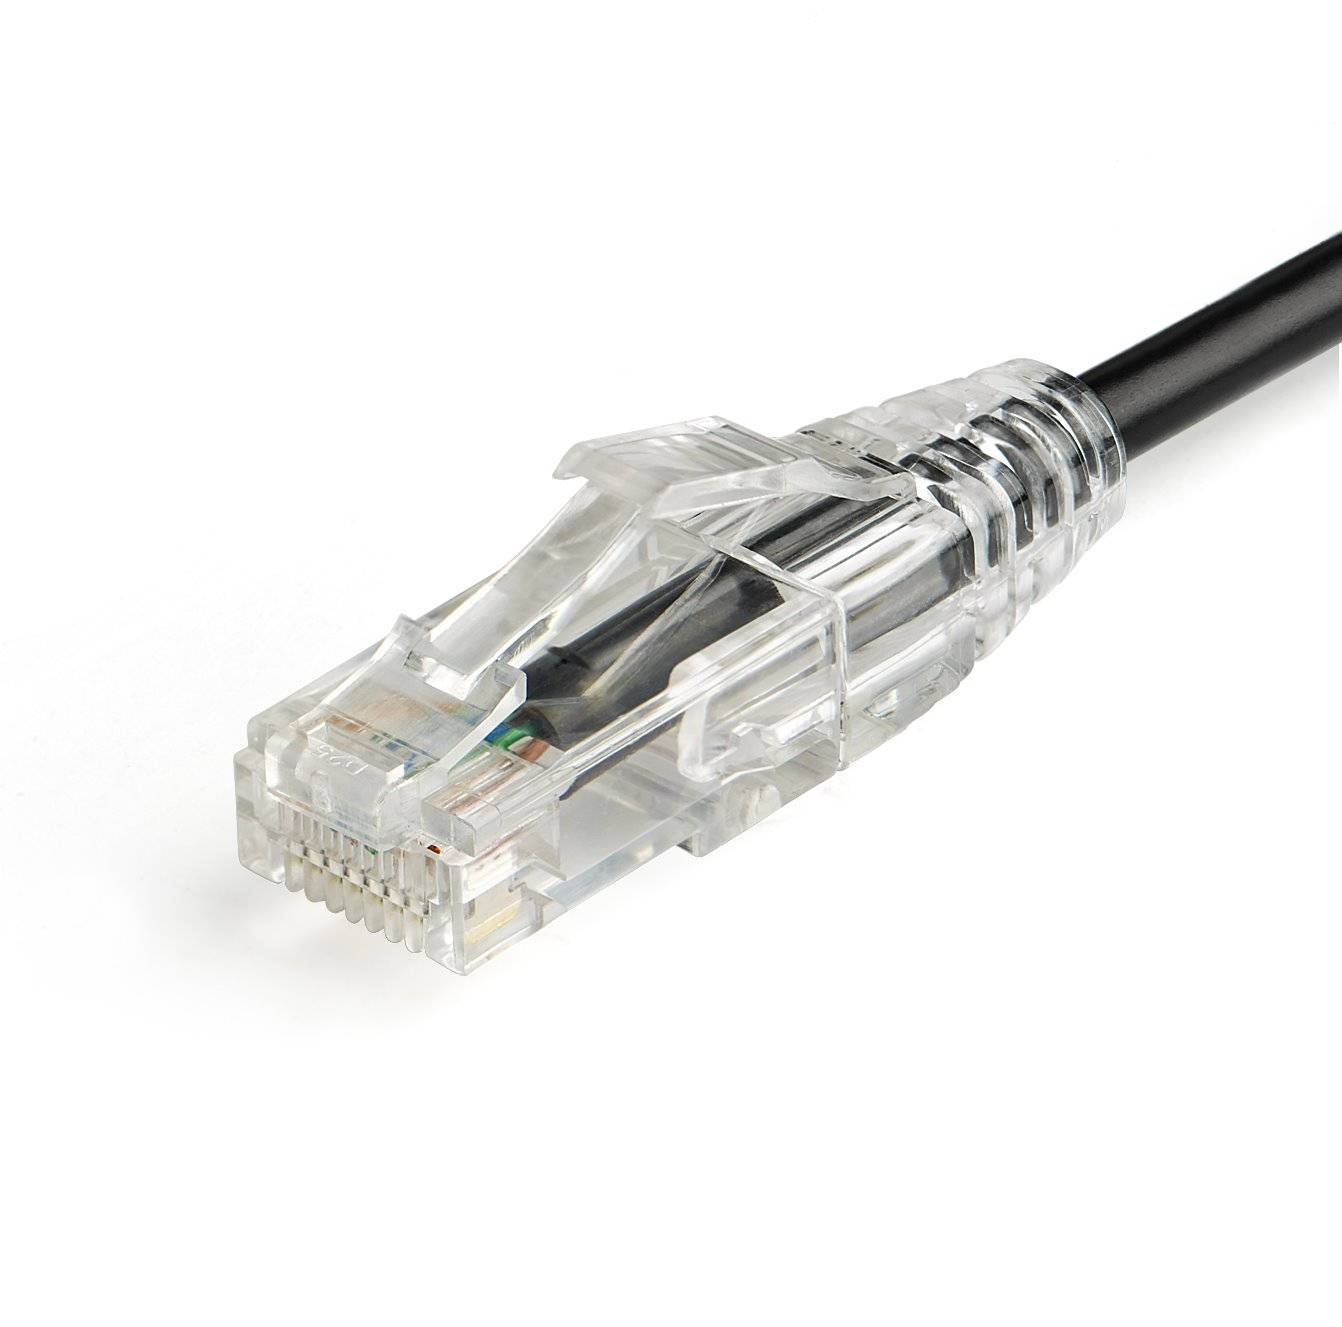 Rca Informatique - image du produit : CISCO USB CONSOLE CABLE USB TO RJ45 1.8M